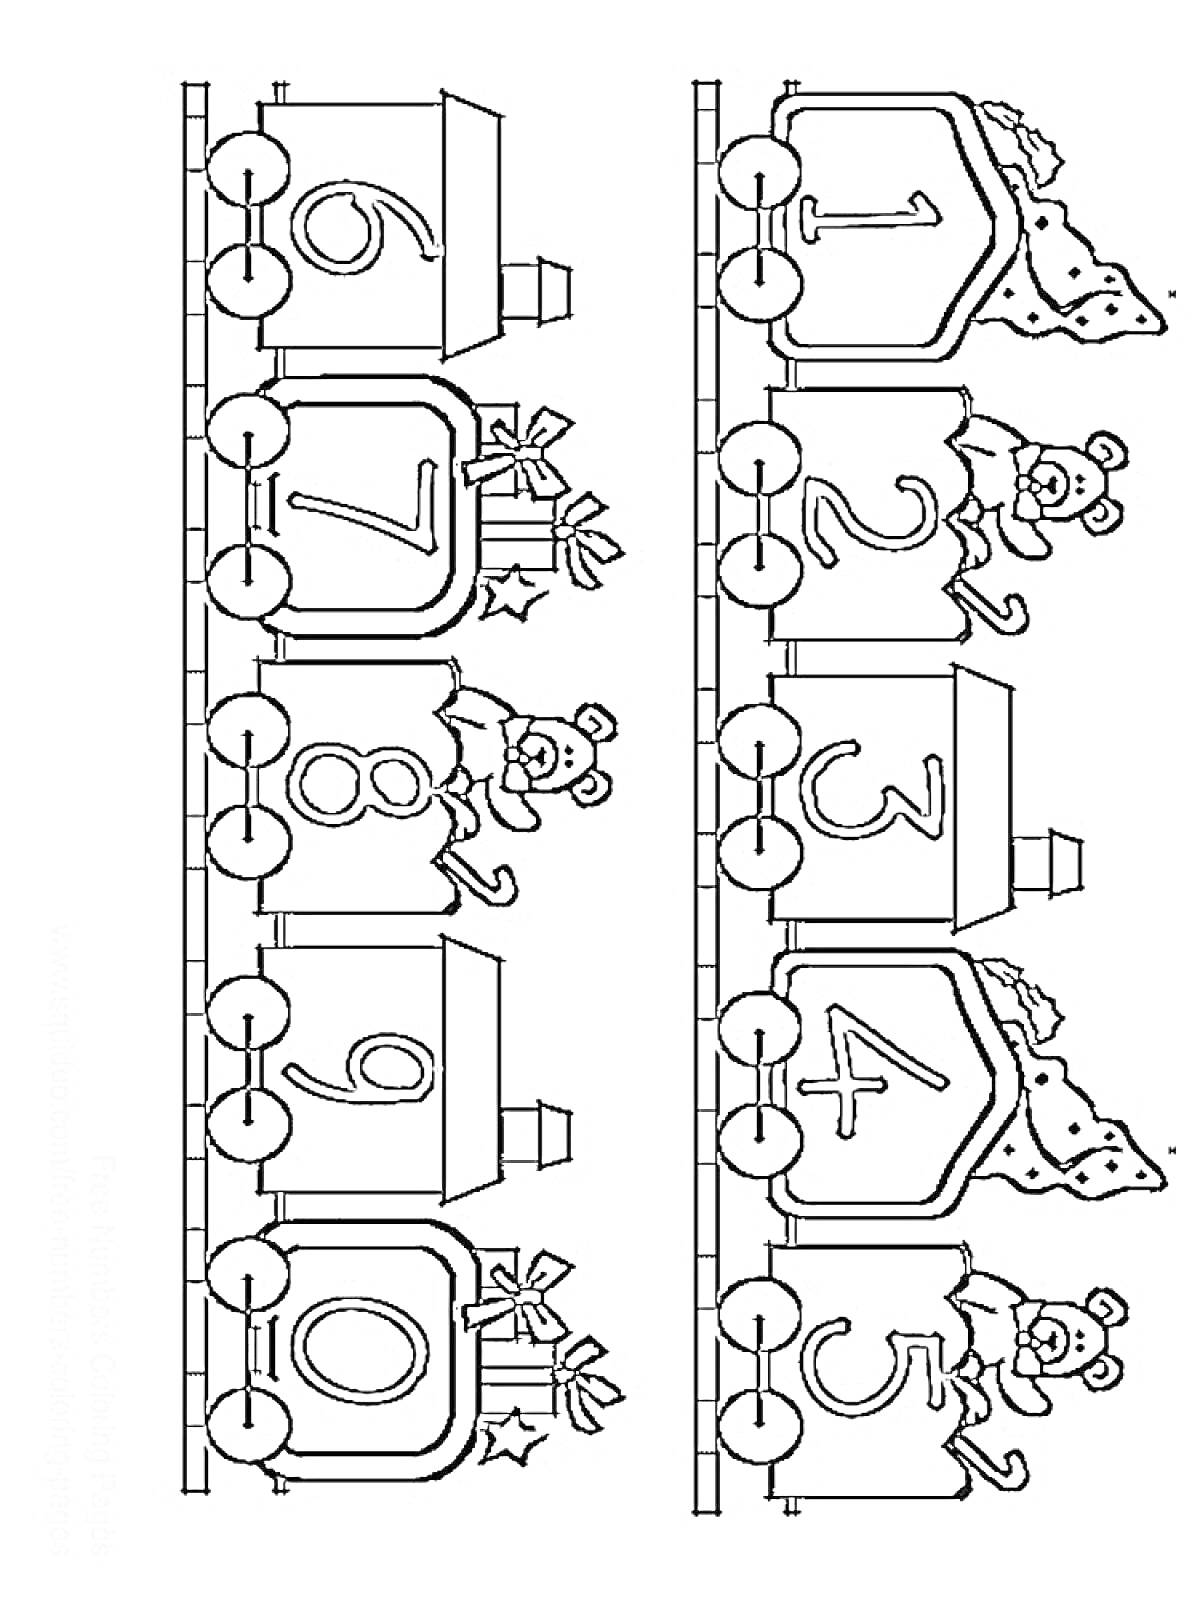 Раскраска Поезд с вагонами, пронумерованными от 1 до 10, с плюшевыми медвежатами и подарками